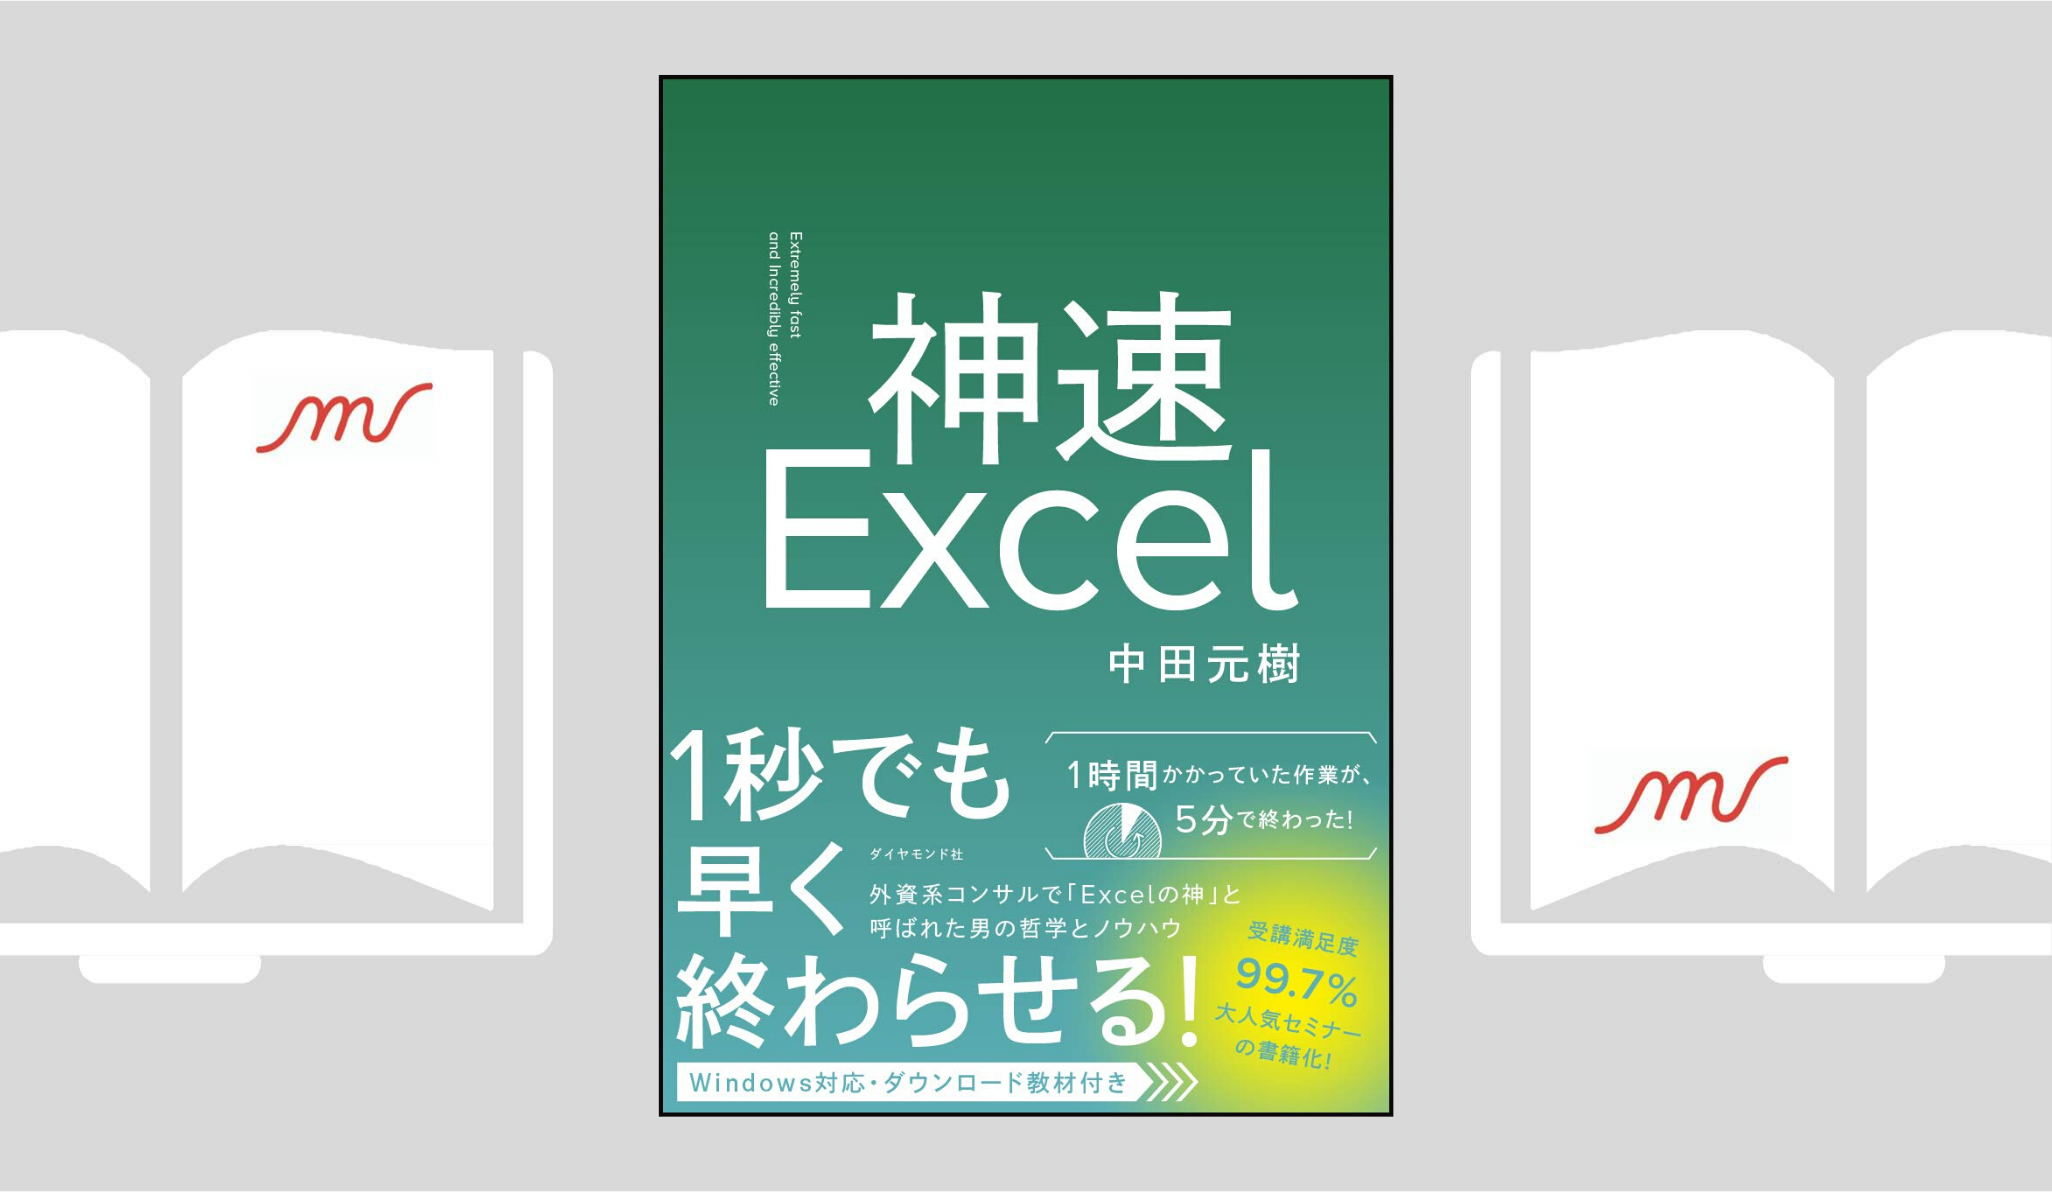 『神速Excel』 中田 元樹